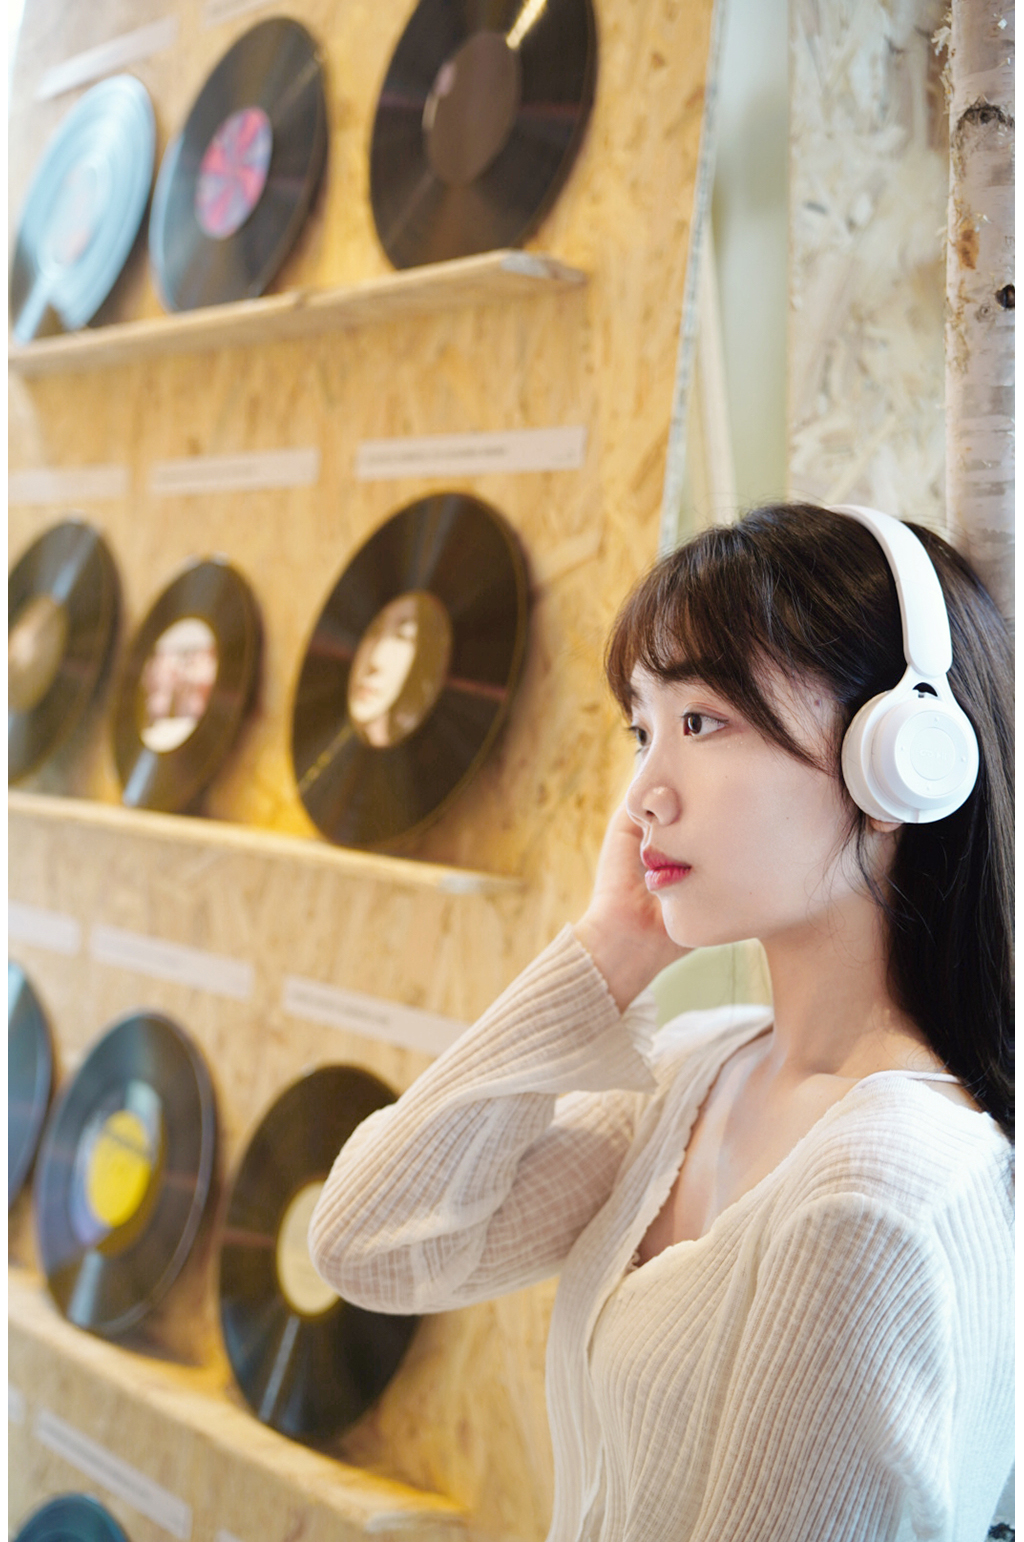 戴耳機聽音樂的女孩圖片素材-JPG圖片尺寸6720 × 4480px-高清圖案501026885-zh.lovepik.com